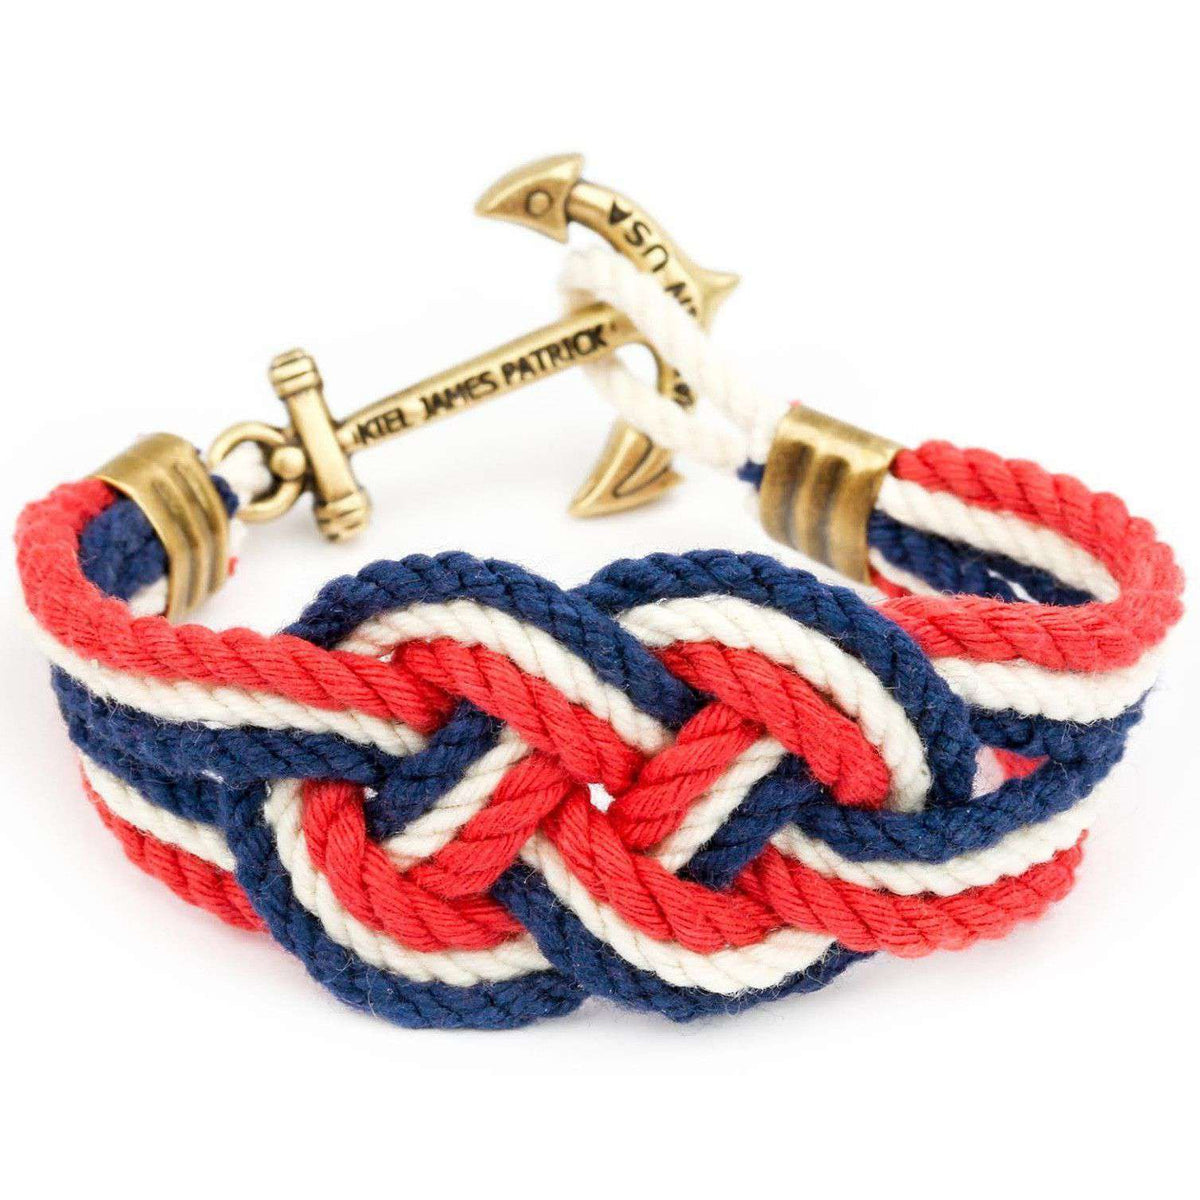 American Adventurist Knot Bracelet by Kiel James Patrick - Country Club Prep